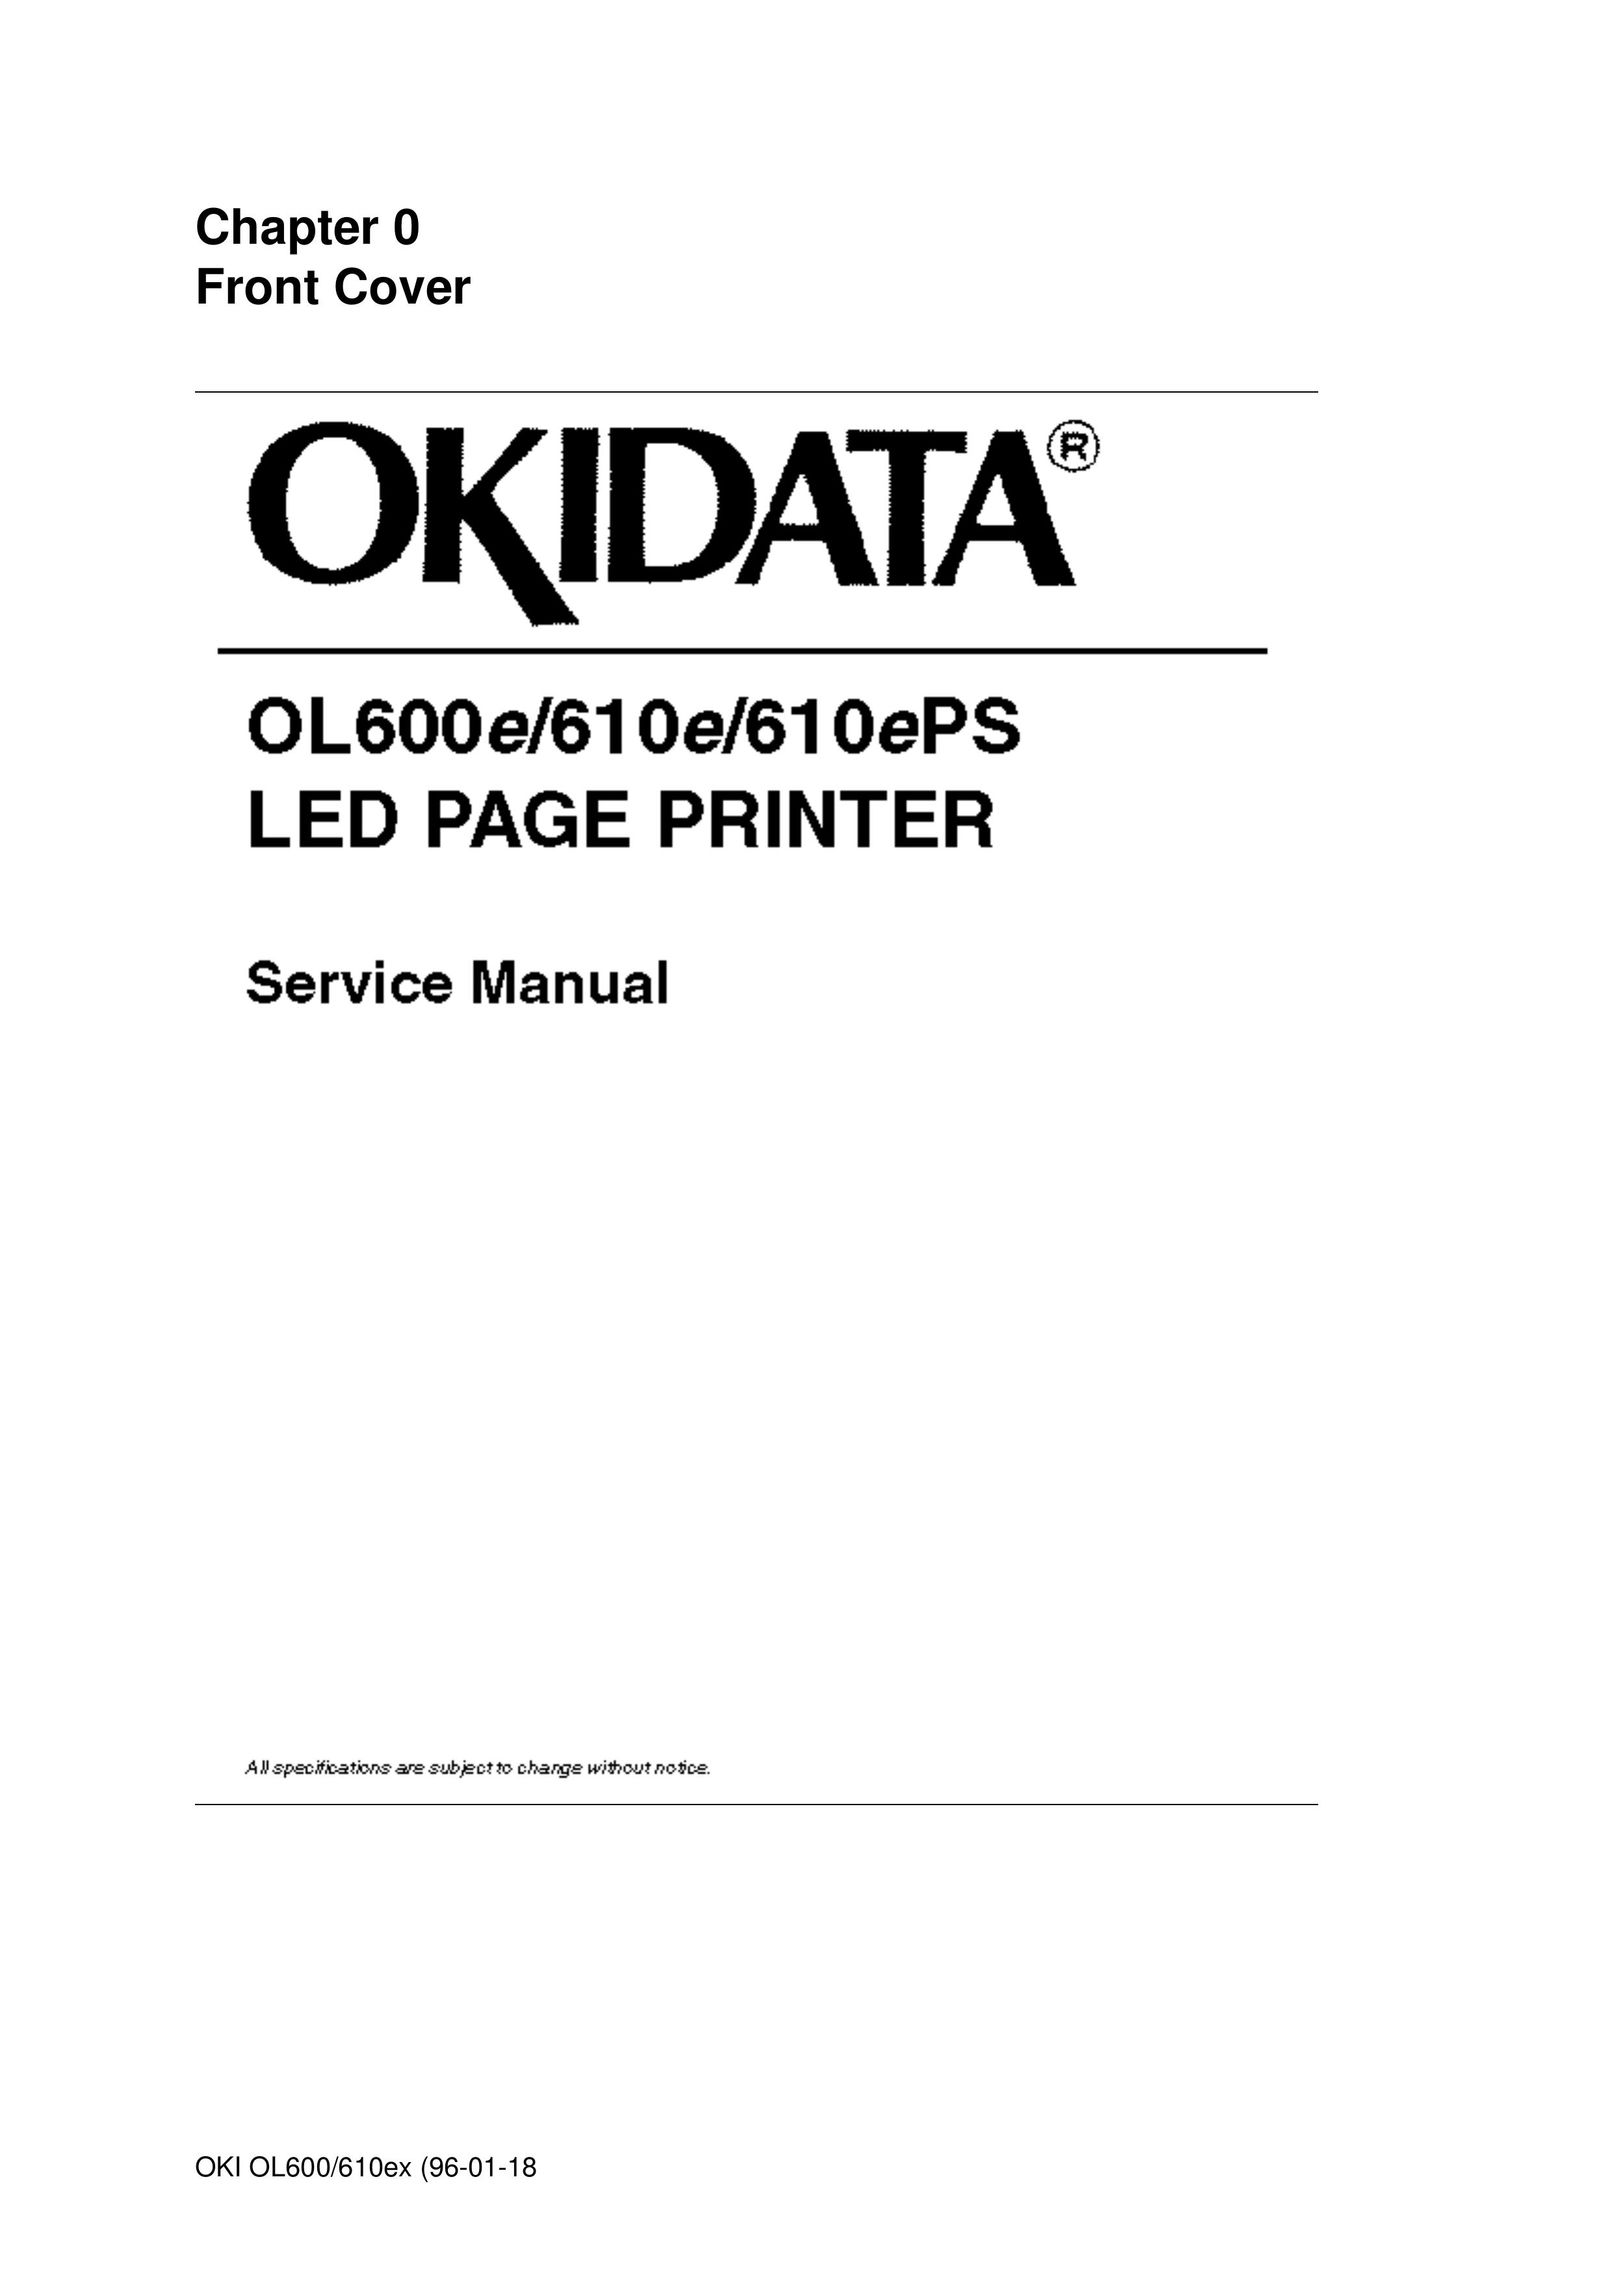 Oki OL600E All in One Printer User Manual